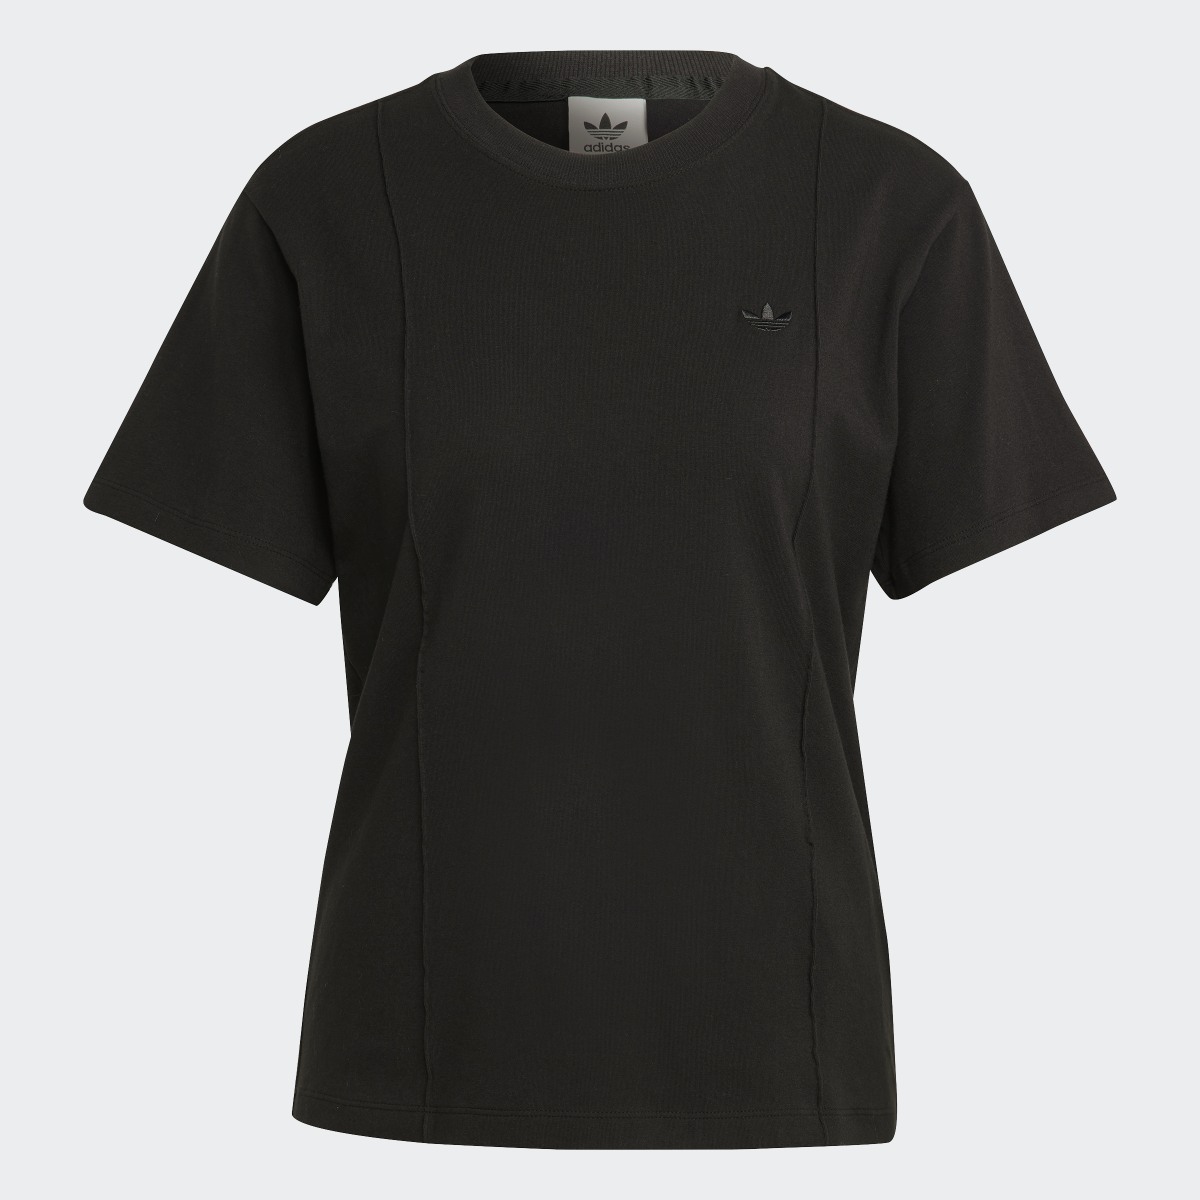 Adidas T-shirt Premium Essentials. 5